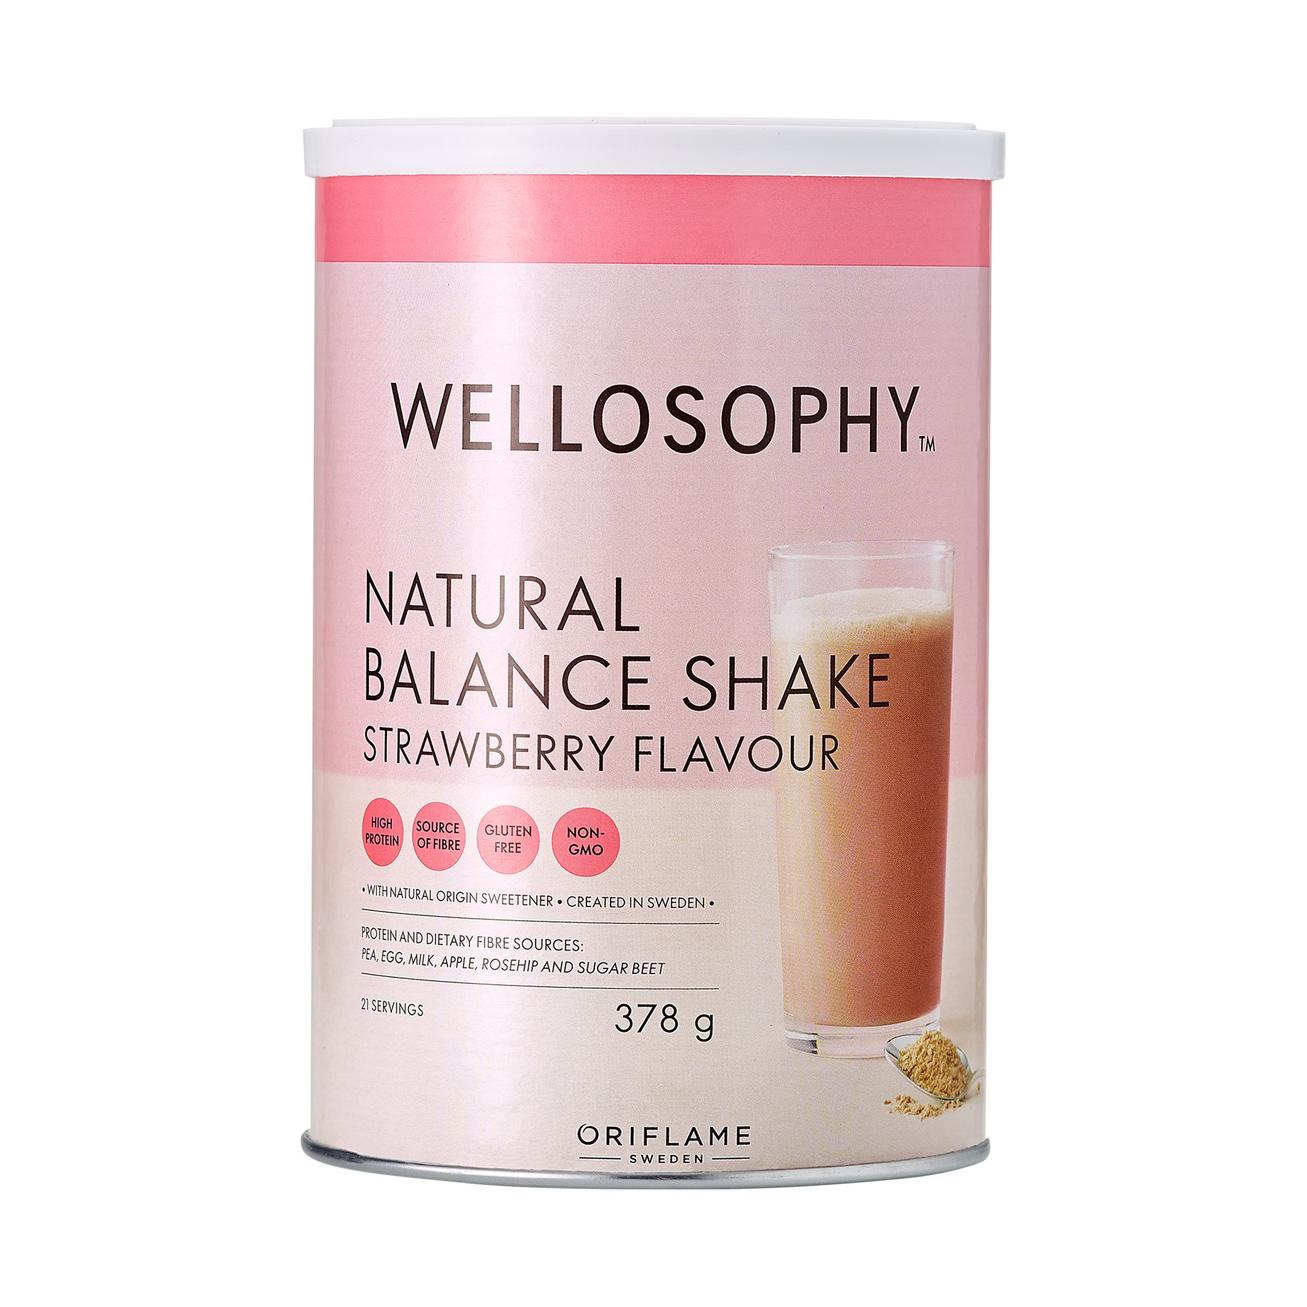 Tilbud: Natural Balance Shake Strawberry Flavour kr 519 på Oriflame